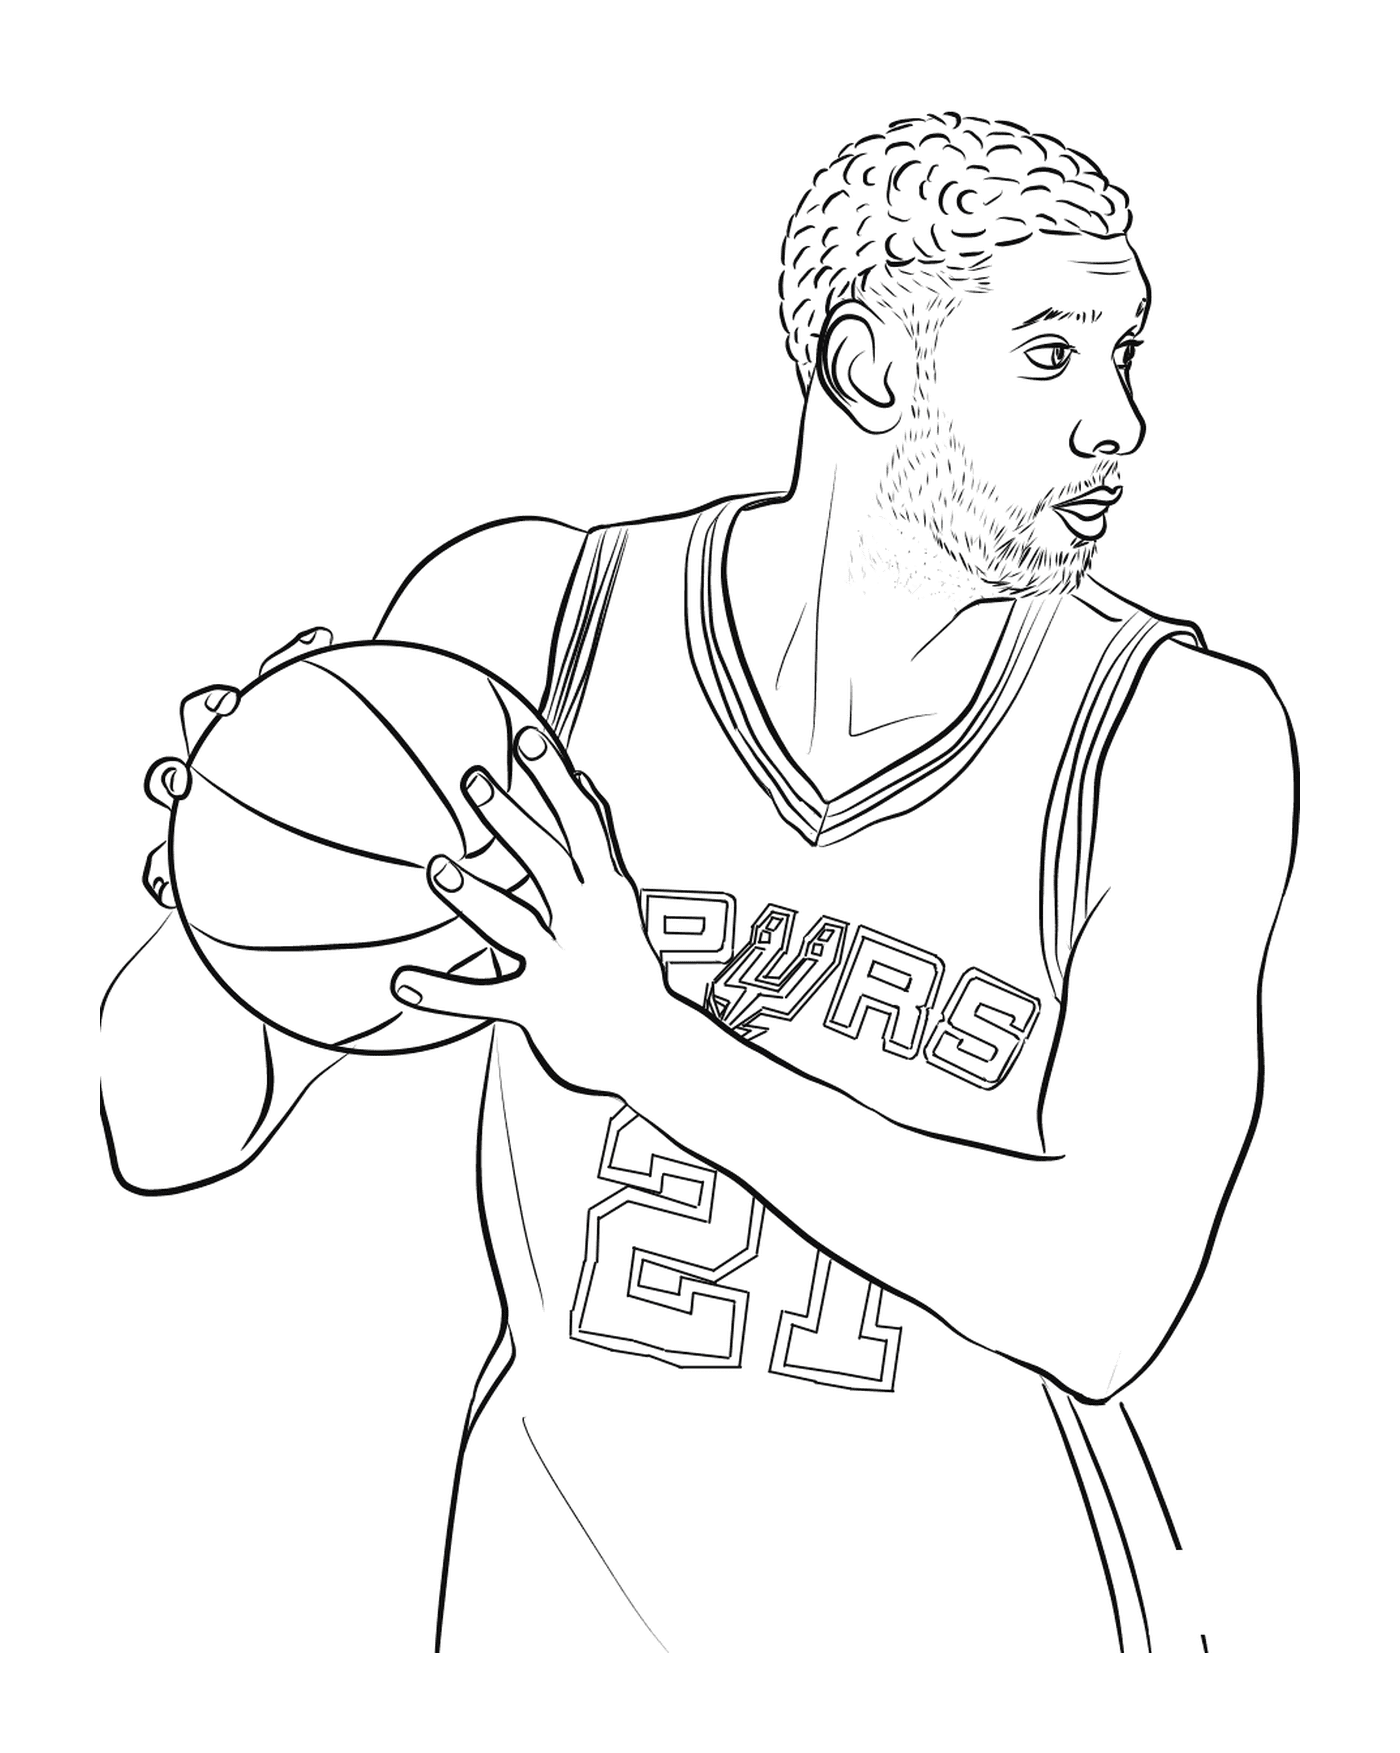   Tim Duncan tient un ballon de basketball 